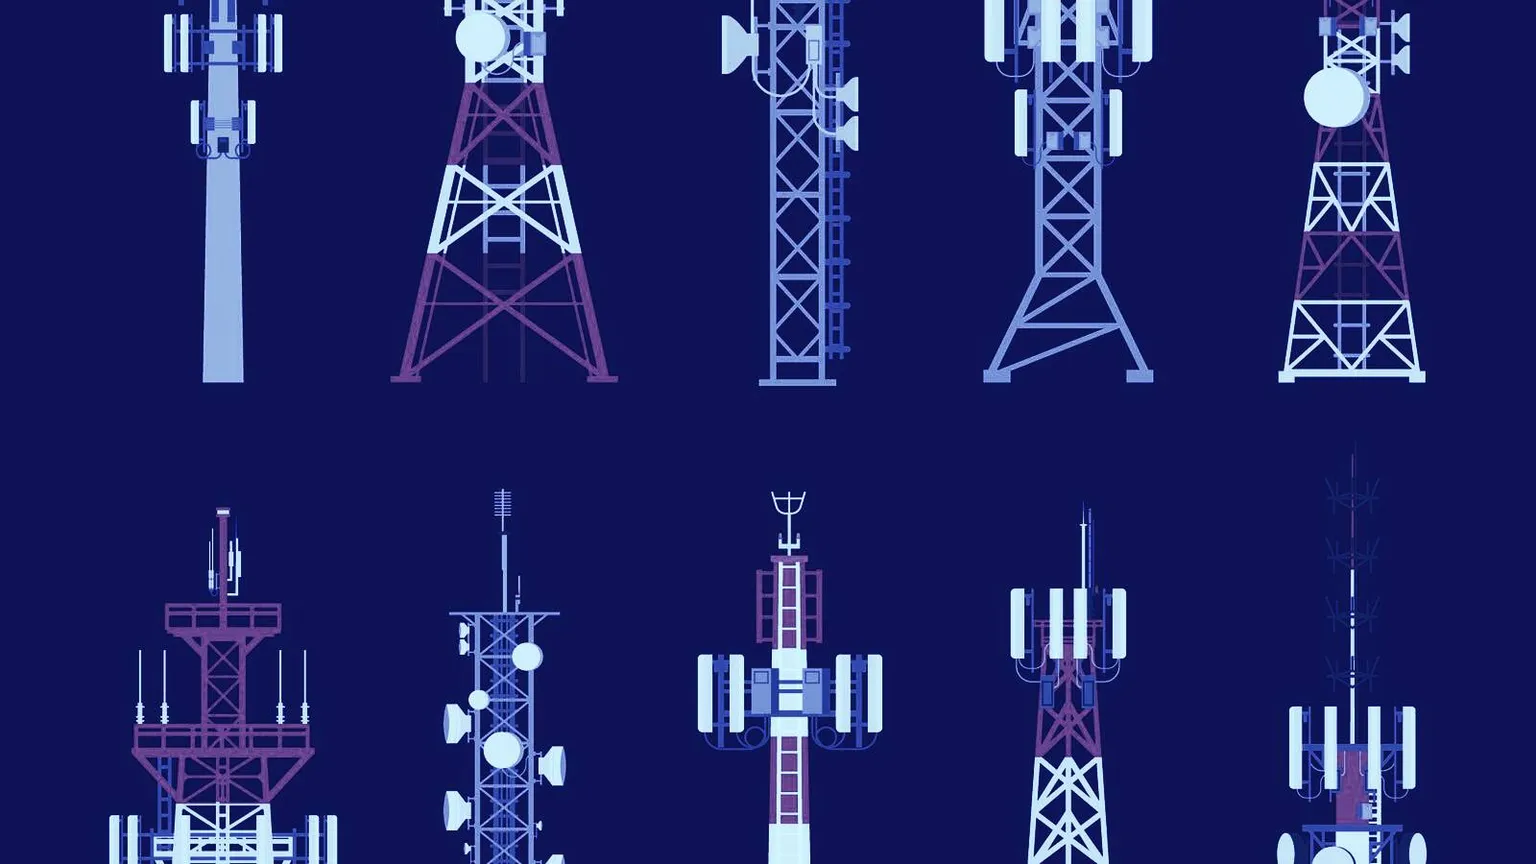 Las torres celulares se quemaron en el Reino Unido debido a la teoría de los 5G. Imagen: Shutterstock